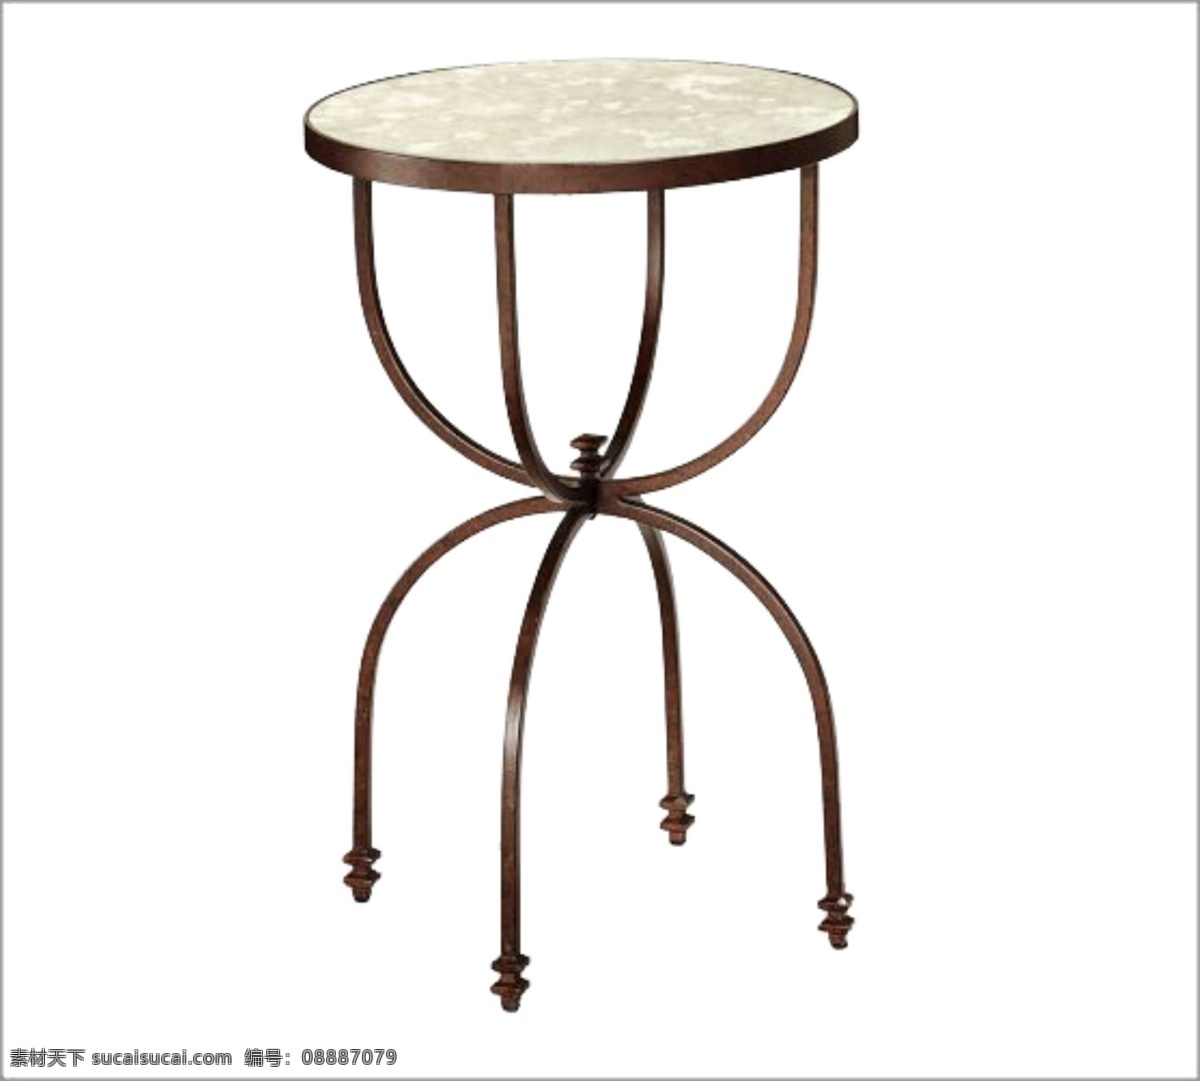 圆形 铁艺 桌子 复古素材 免抠素材 素材复古 桌子素材